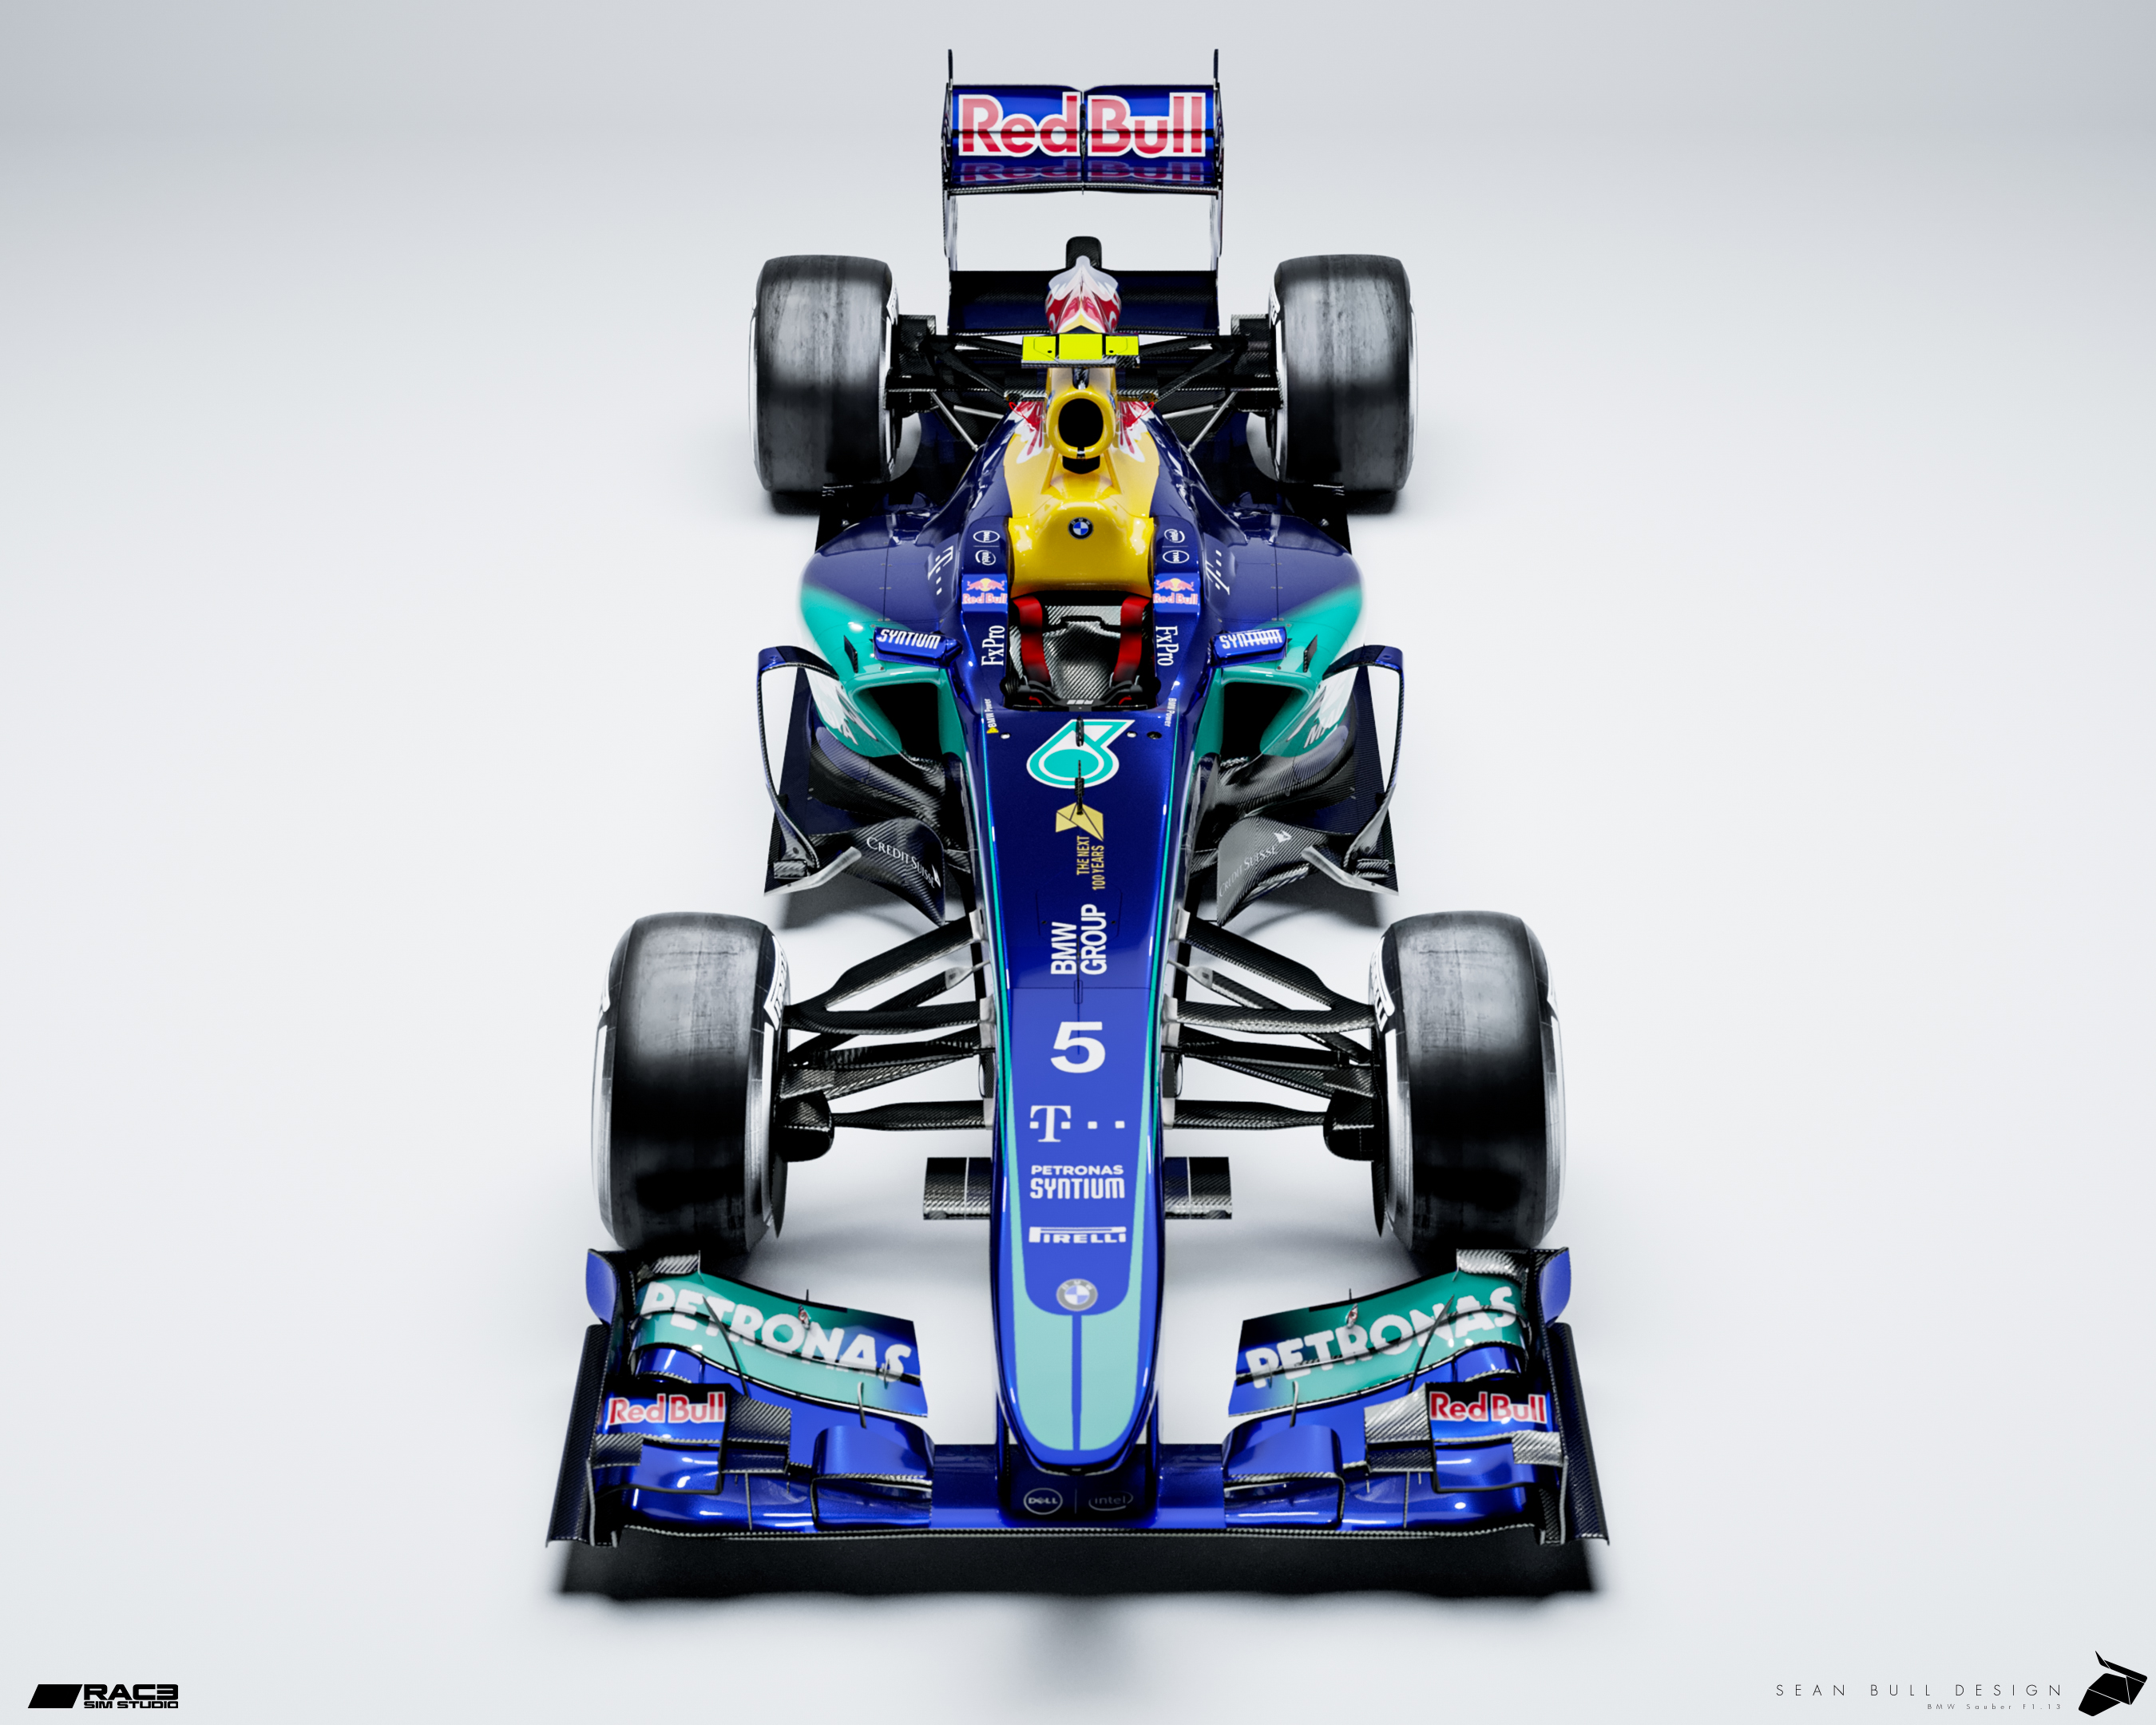 Sauber F1 Team Motorsport AG Formula 1 Auto Car Motor Automobile Racing Patch 